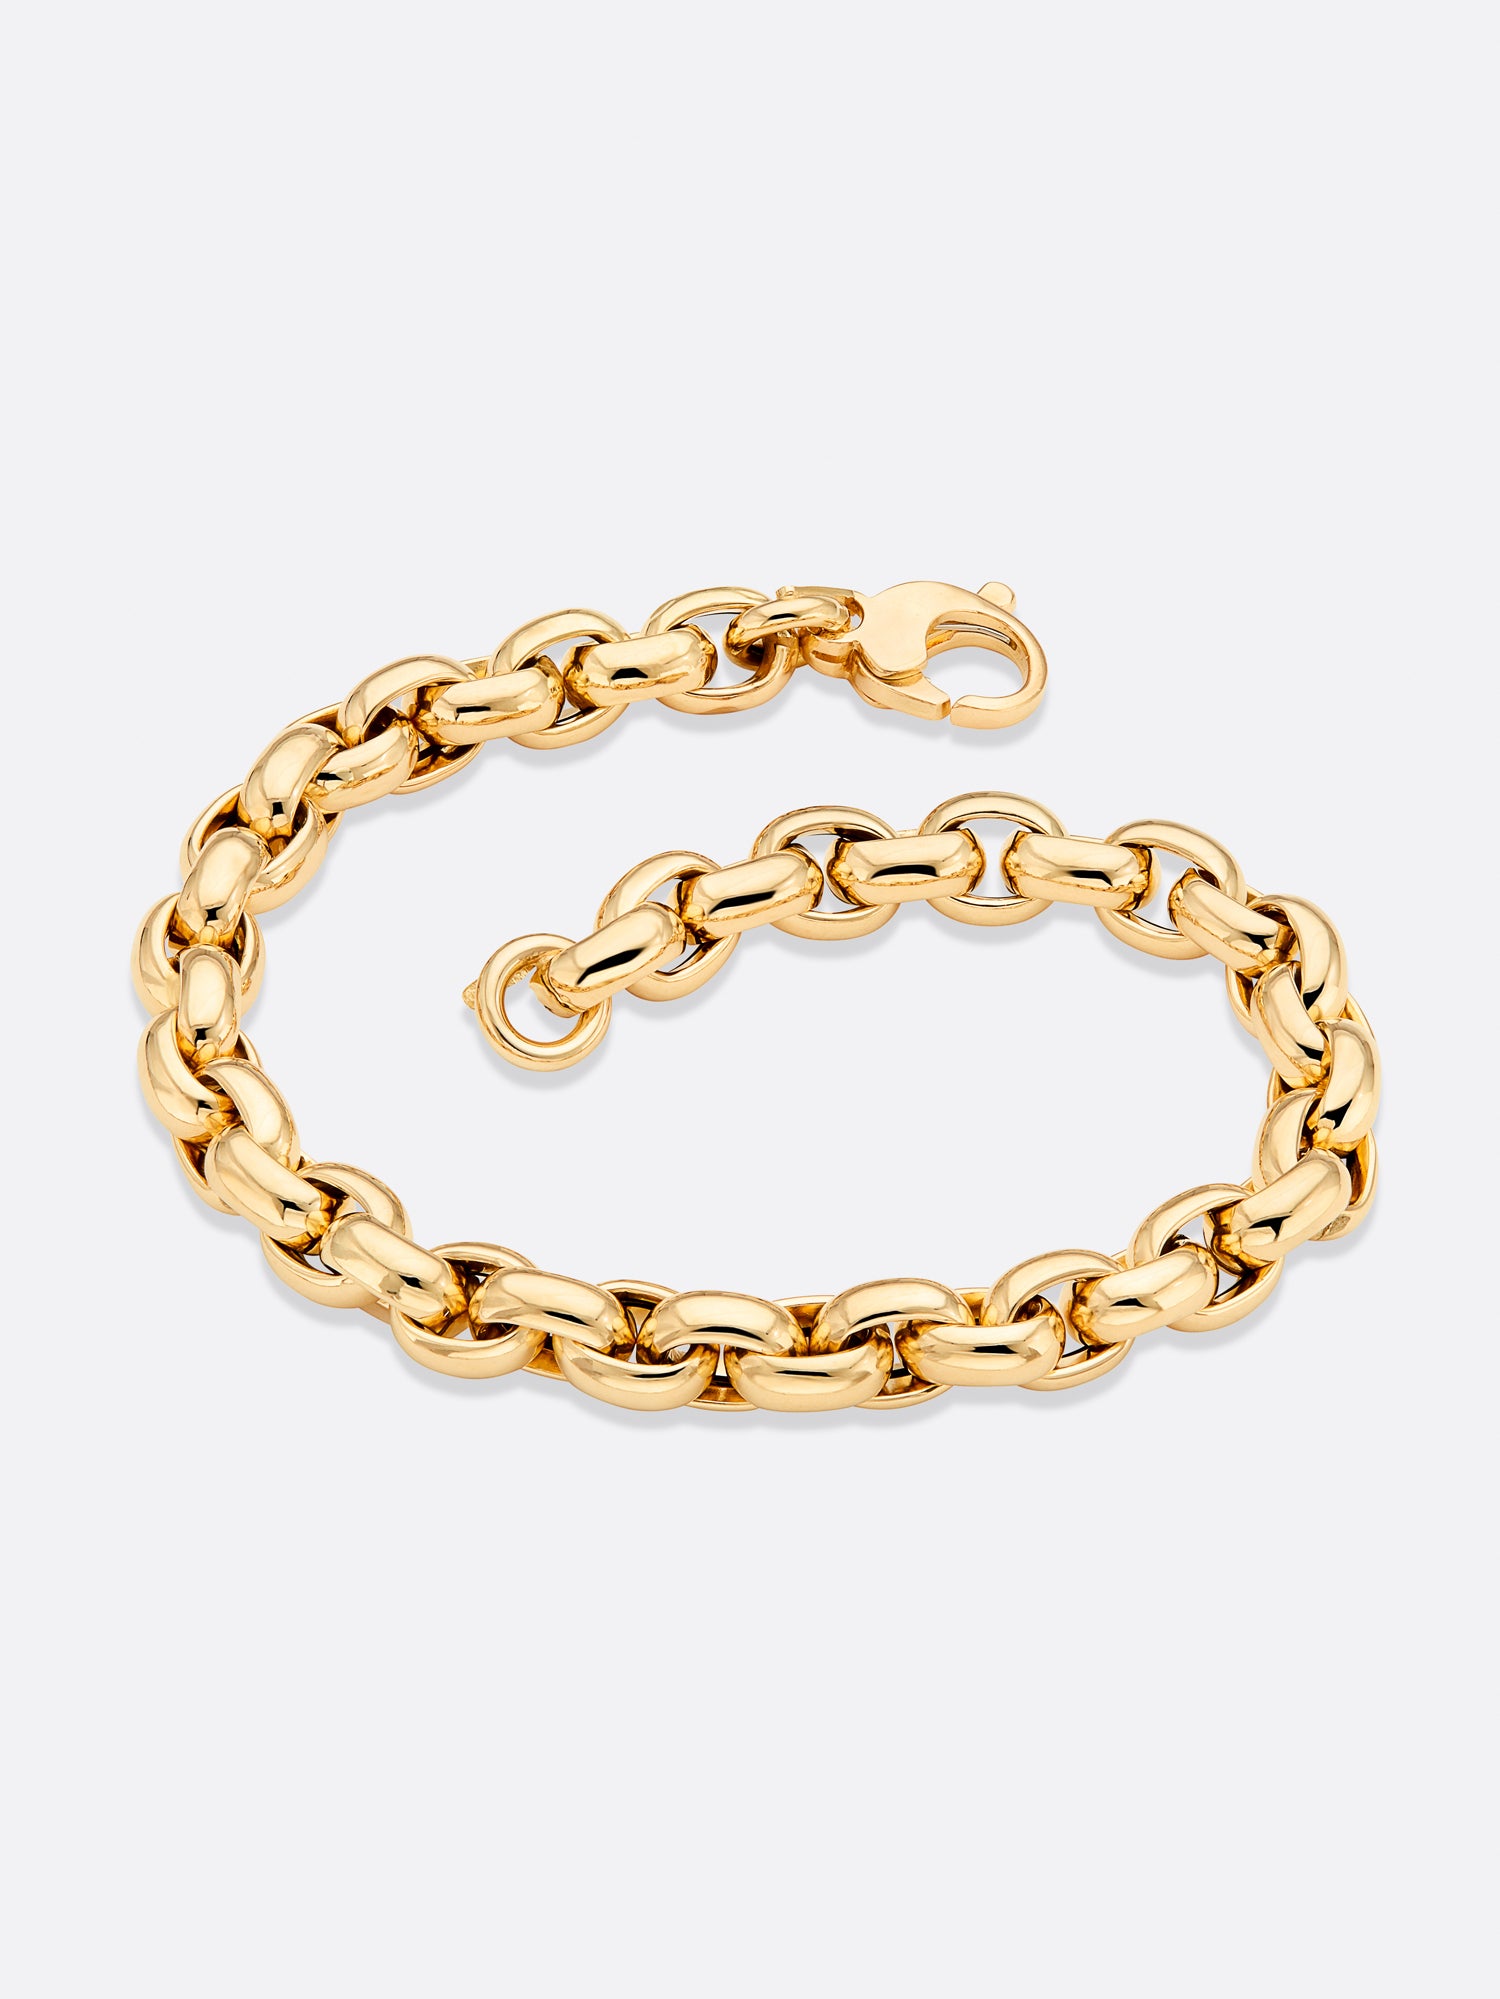 Brochu Walker | Women's Fine Jewelry Icons Yellow Gold Rolo Link Bracelet